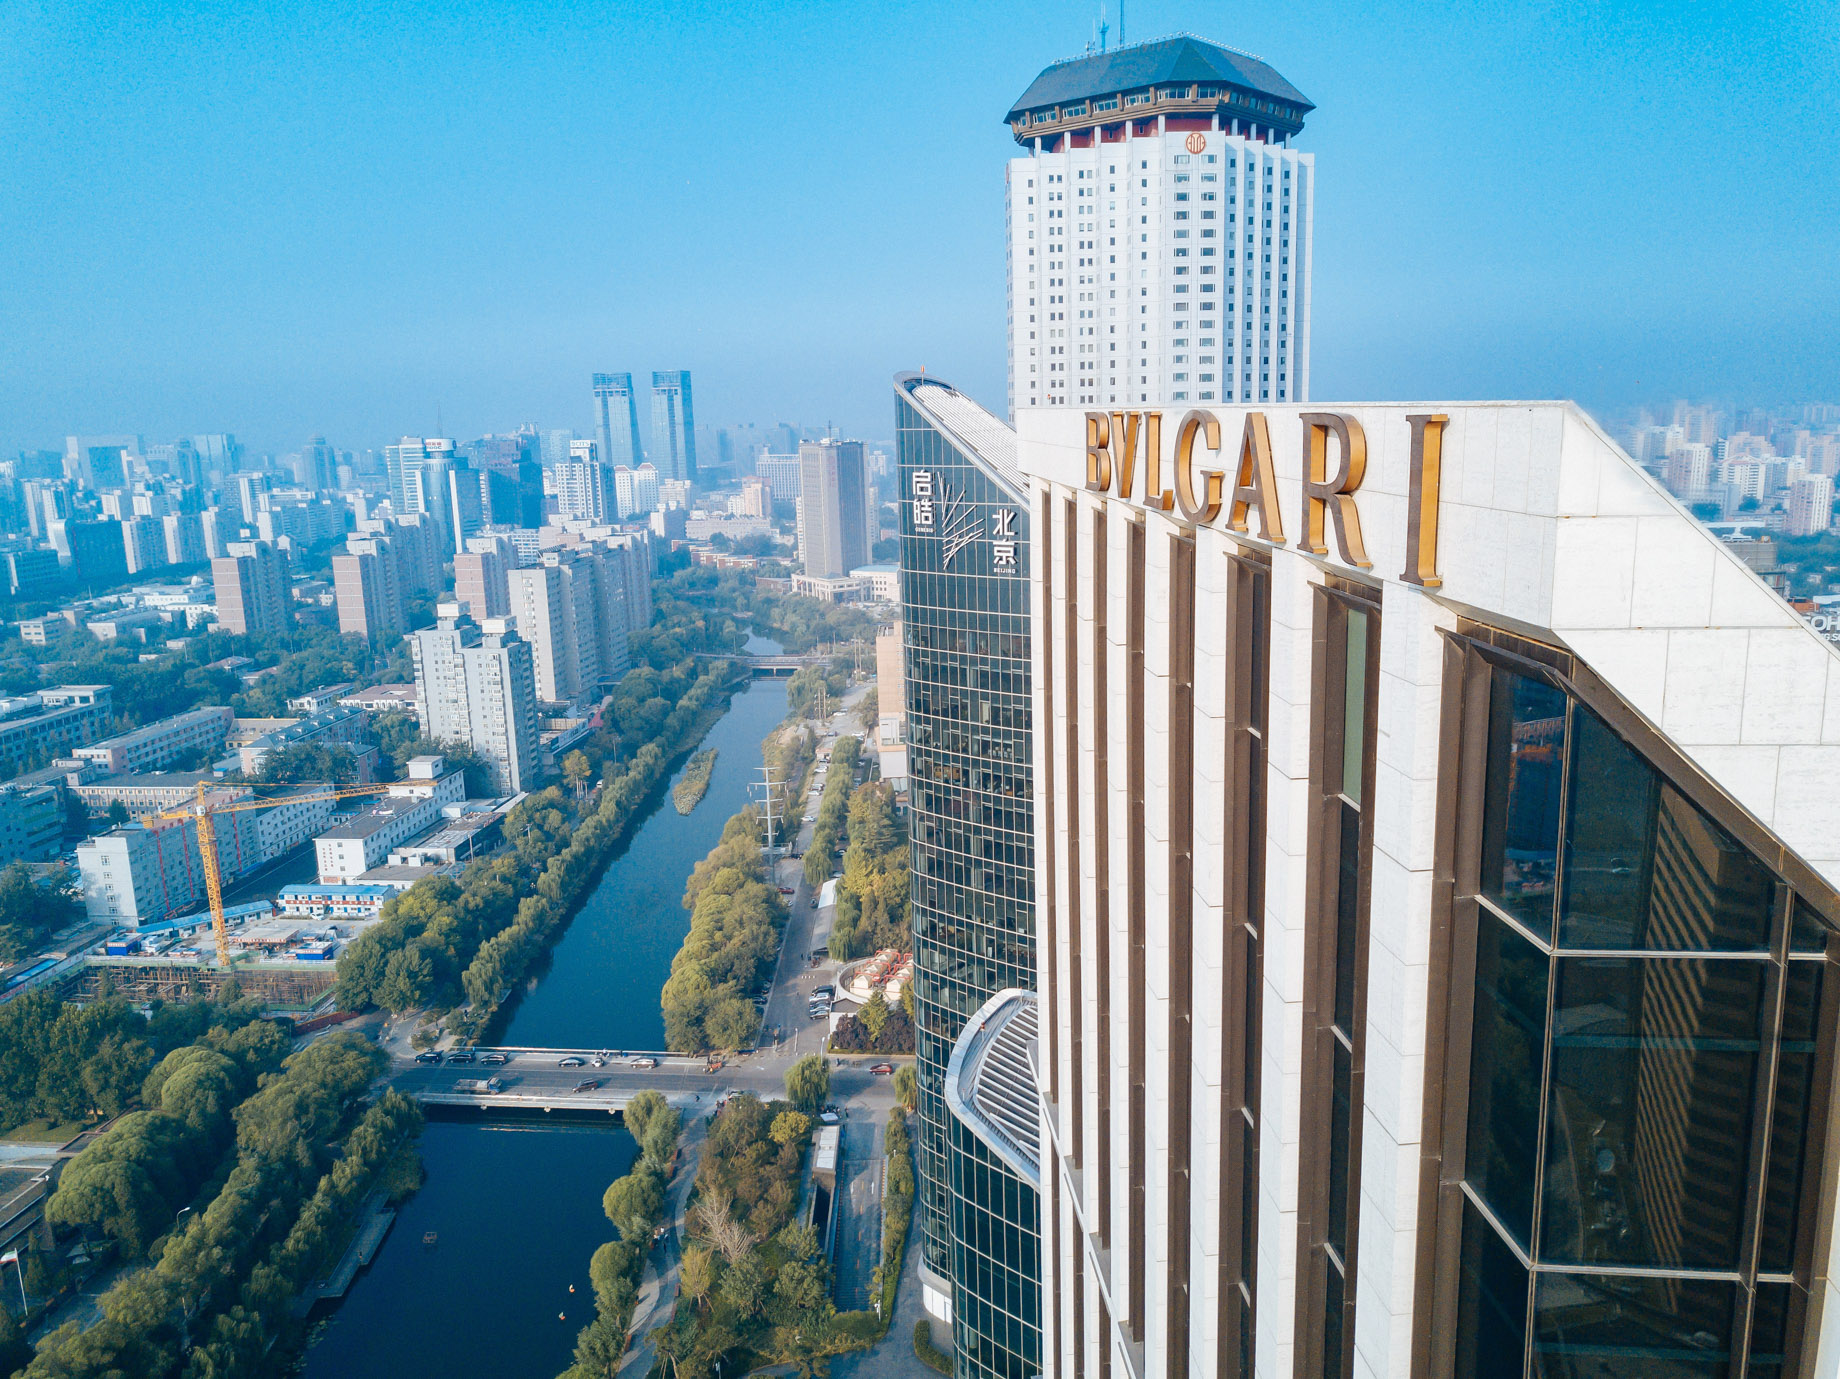 Bvlgari Hotel Beijing – Beijing, China – Hotel Aerial View